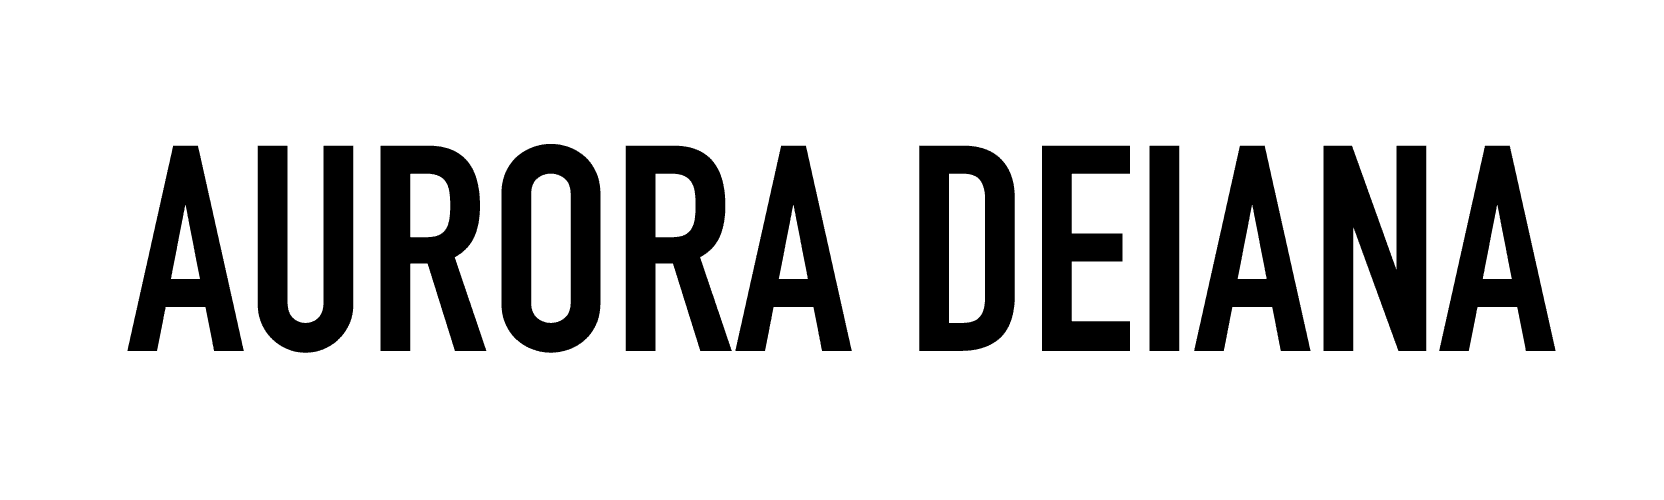 Logo Aurora Deiana